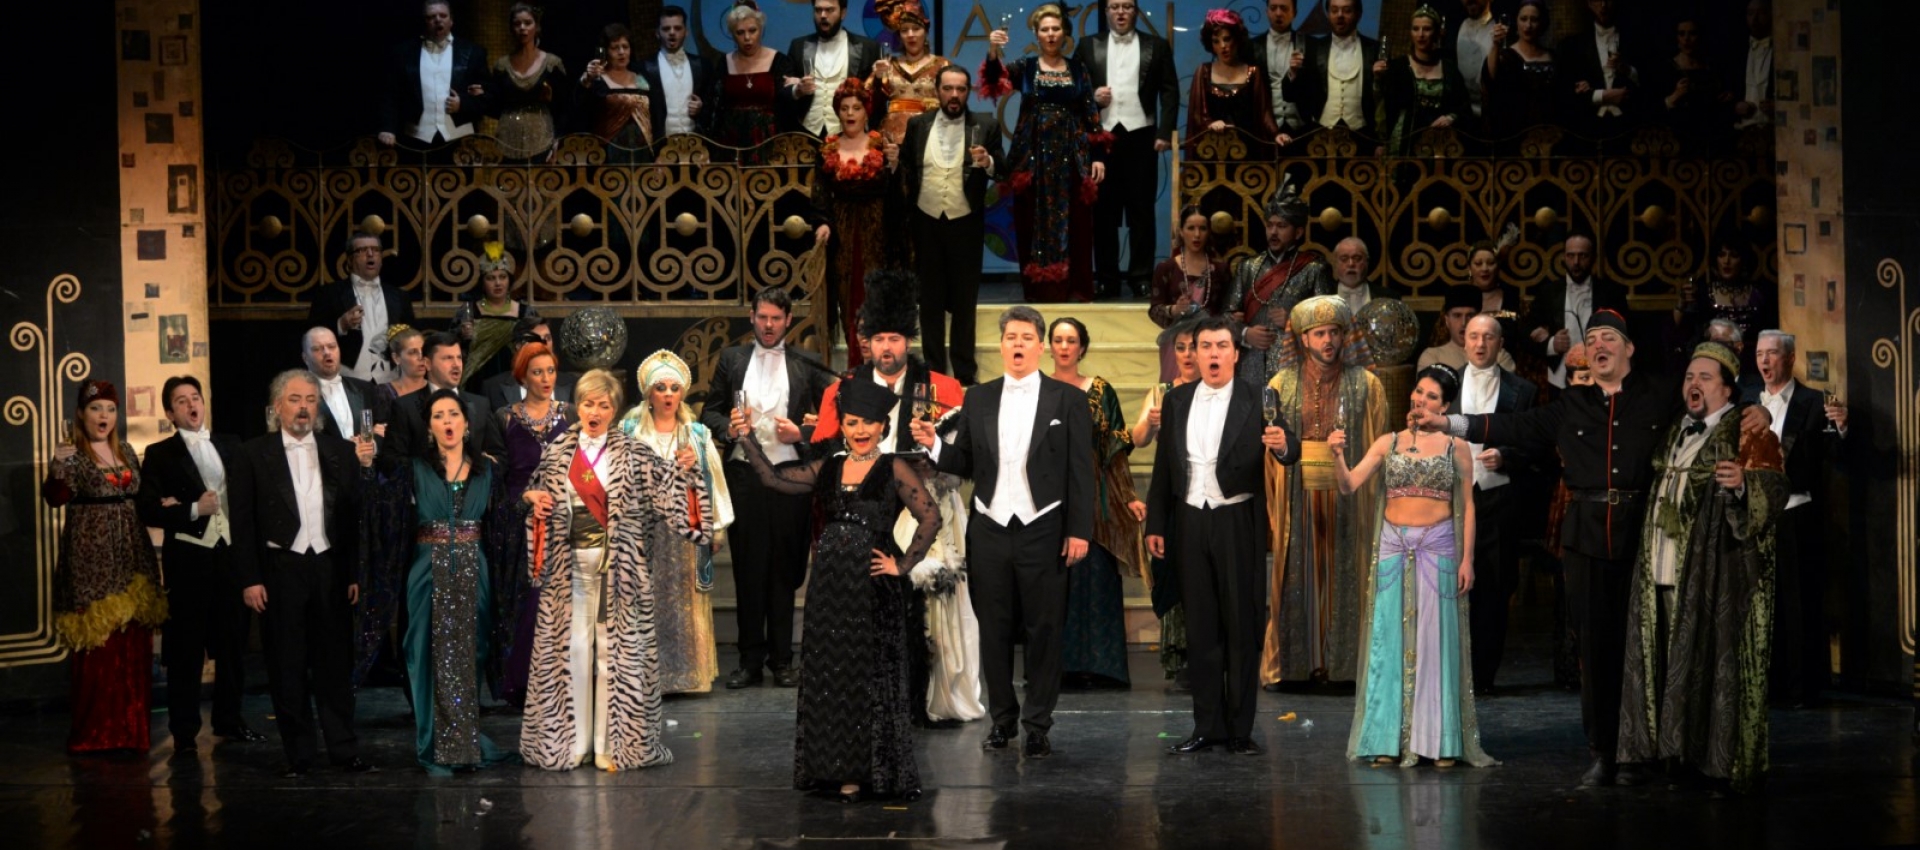 LILIACUL - Festivalul de Operă și Operetă în aer liber